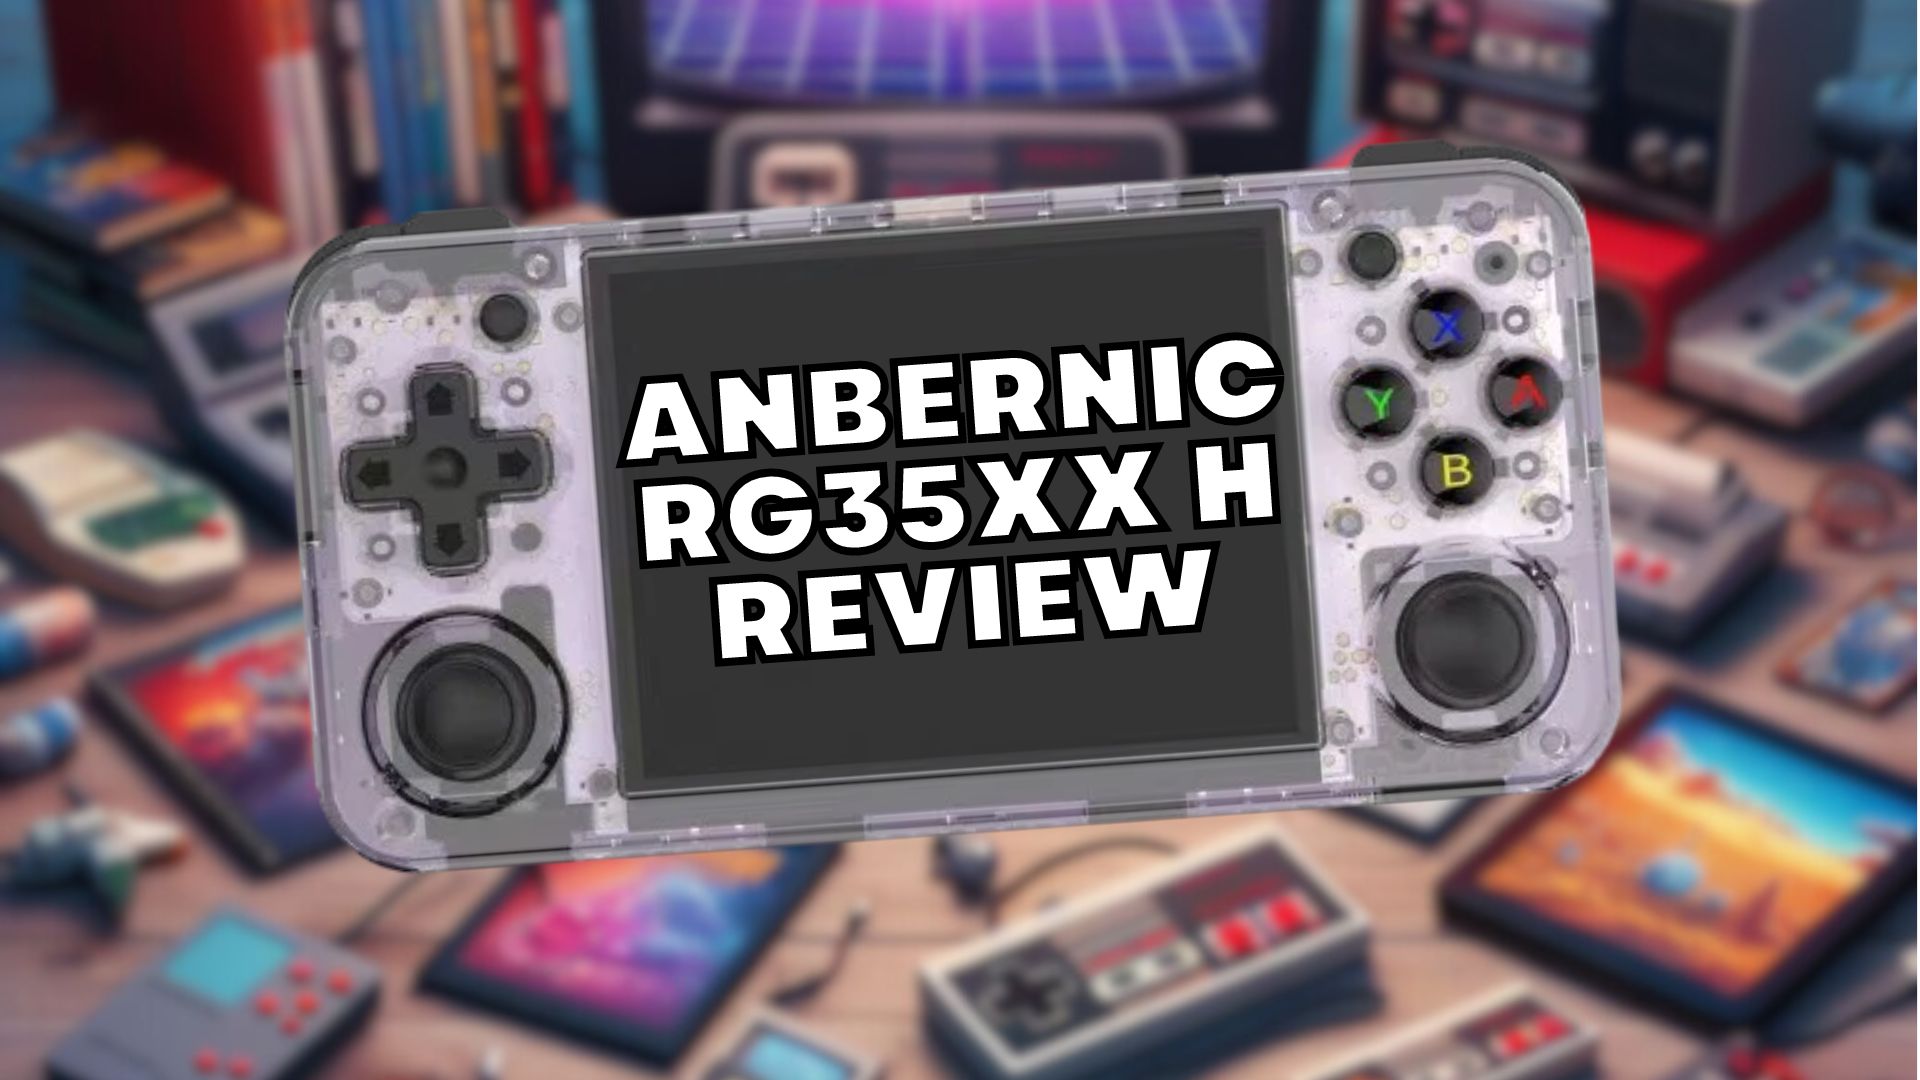 Anbernic Recenzja RG35XX H z materiałem wideo - świetny budżetowy handheld do gier retro